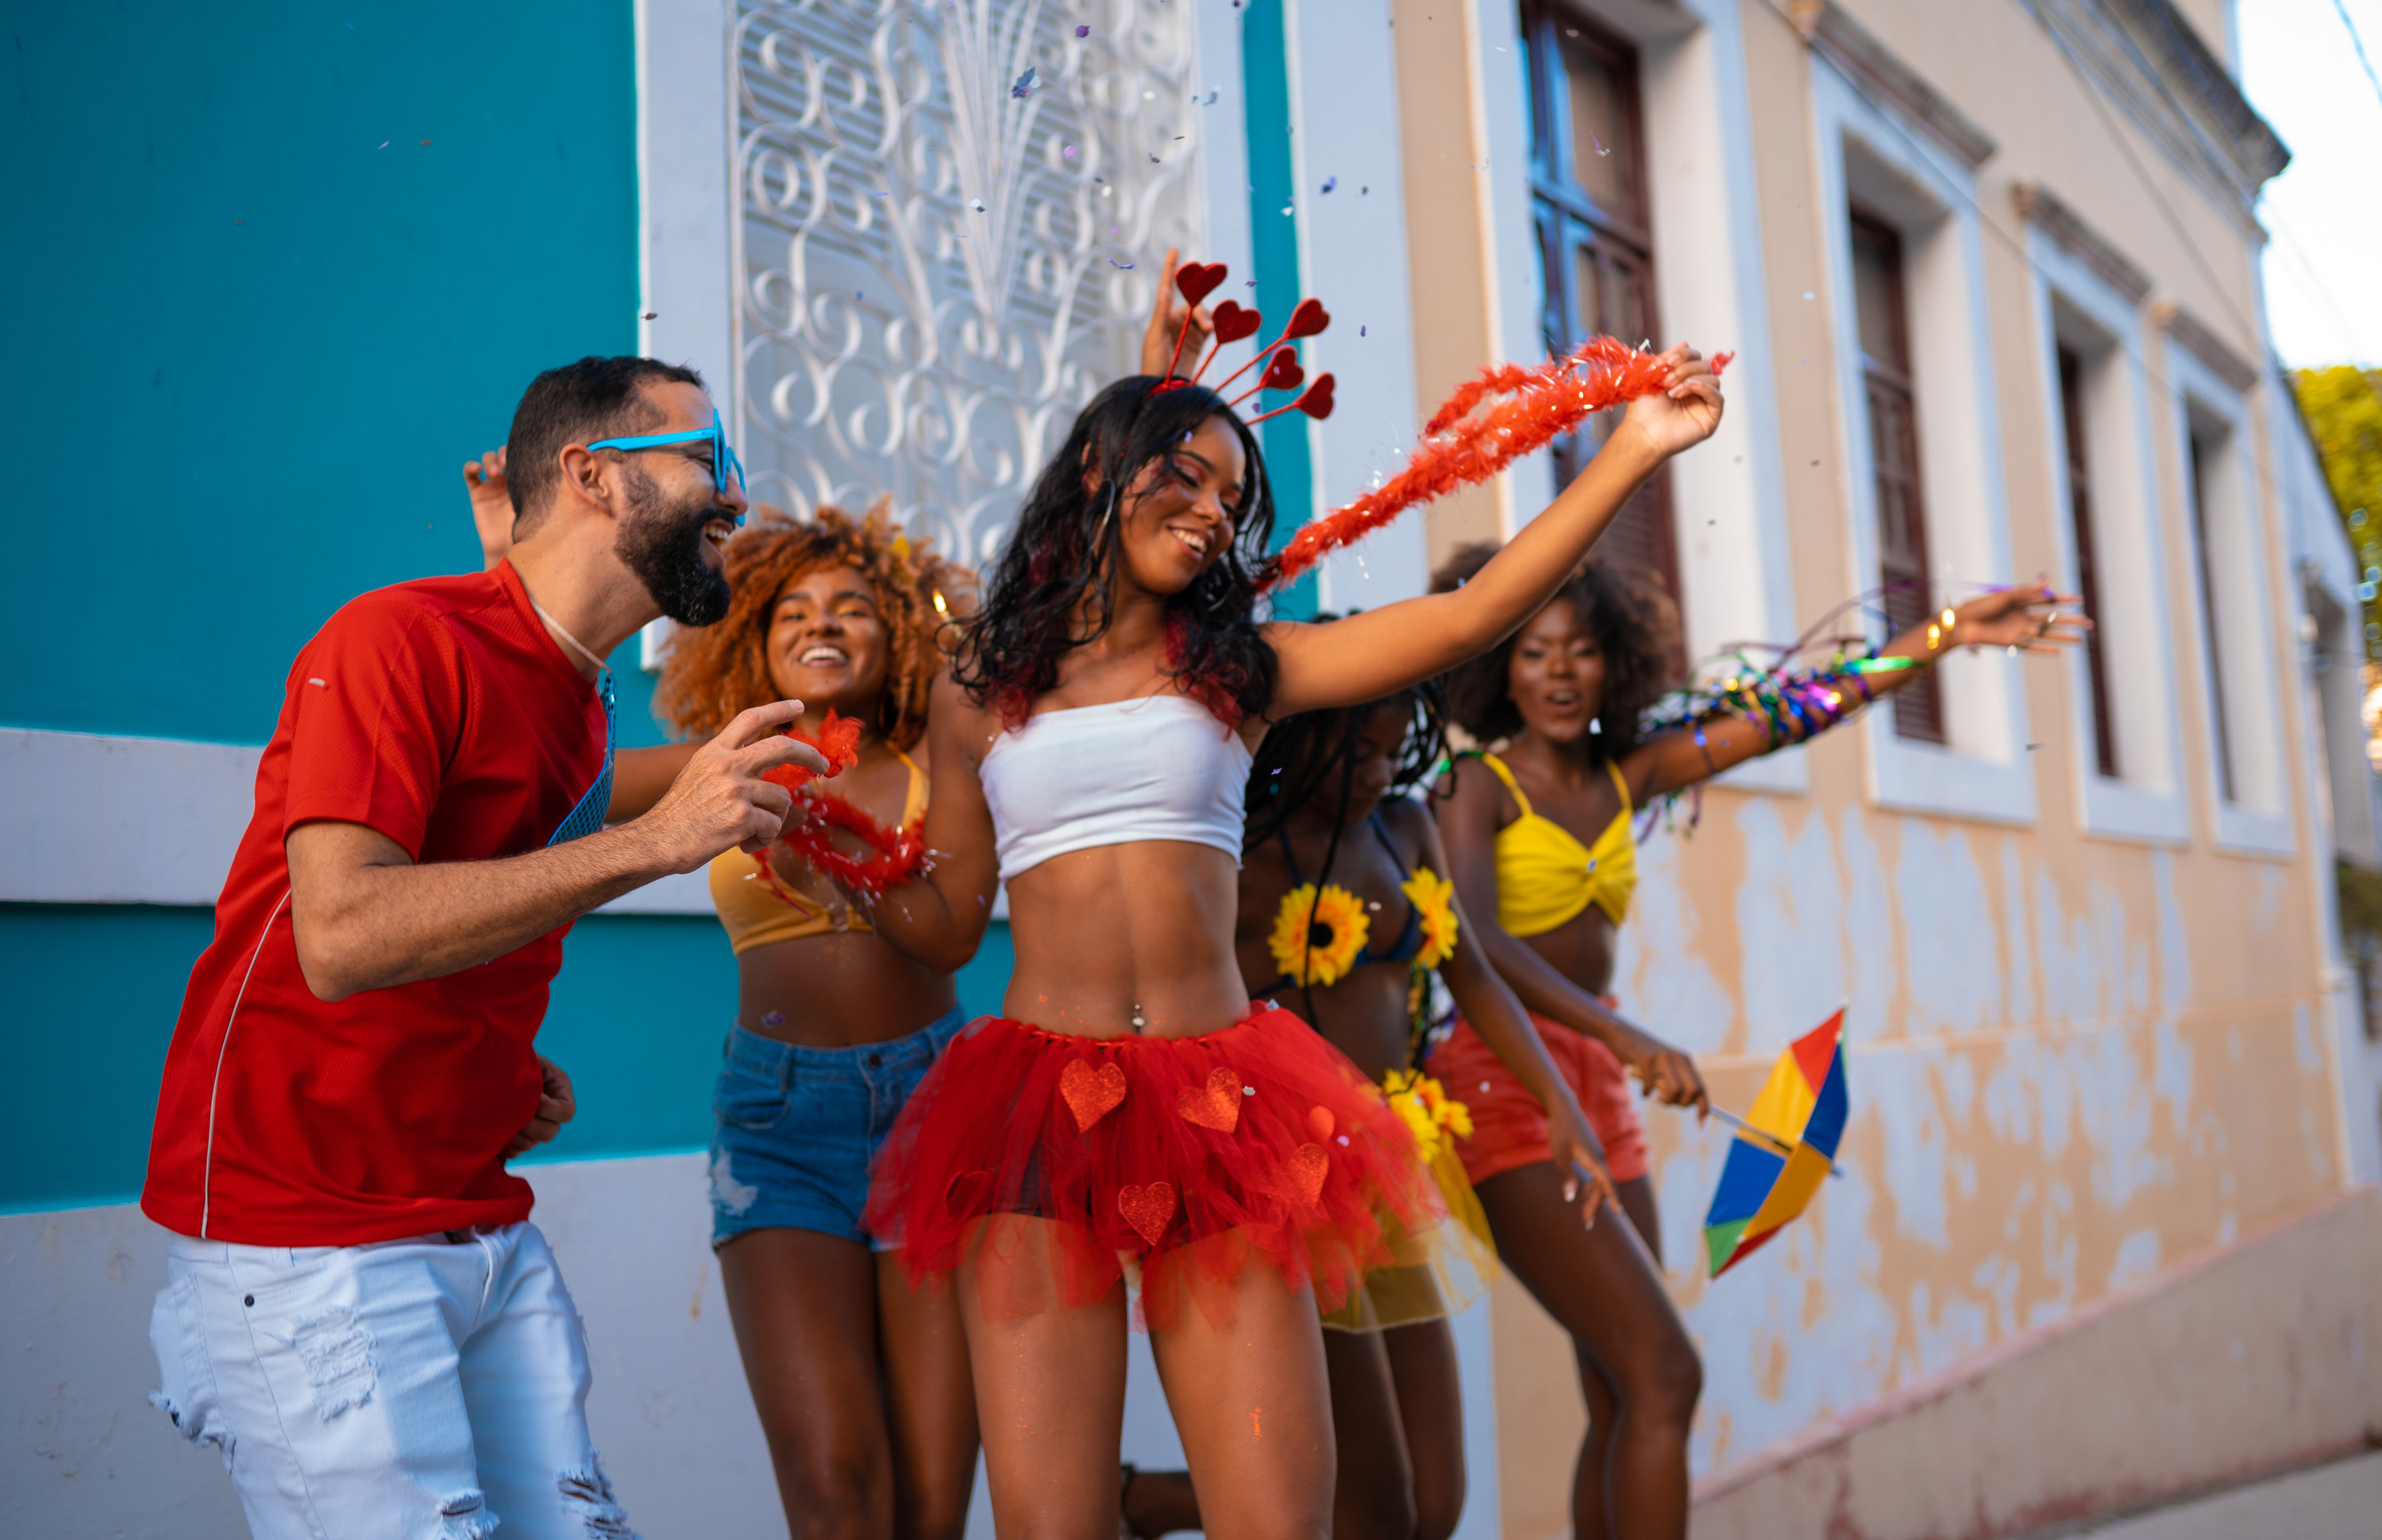 Brazilian people dancing